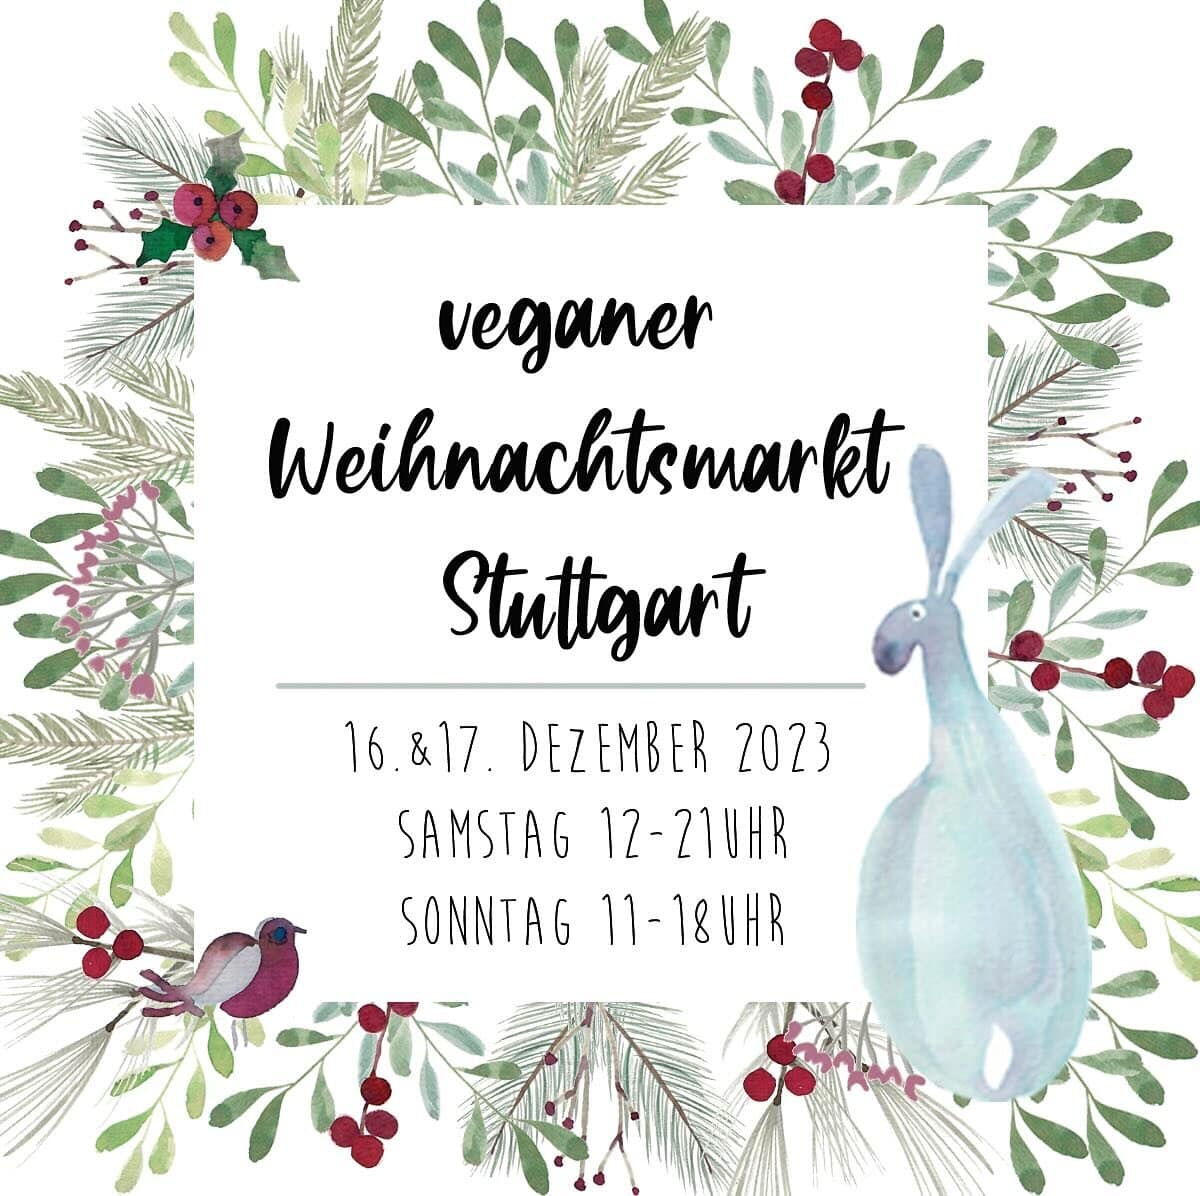 Veganer Weihnachtsmarkt Stuttgart